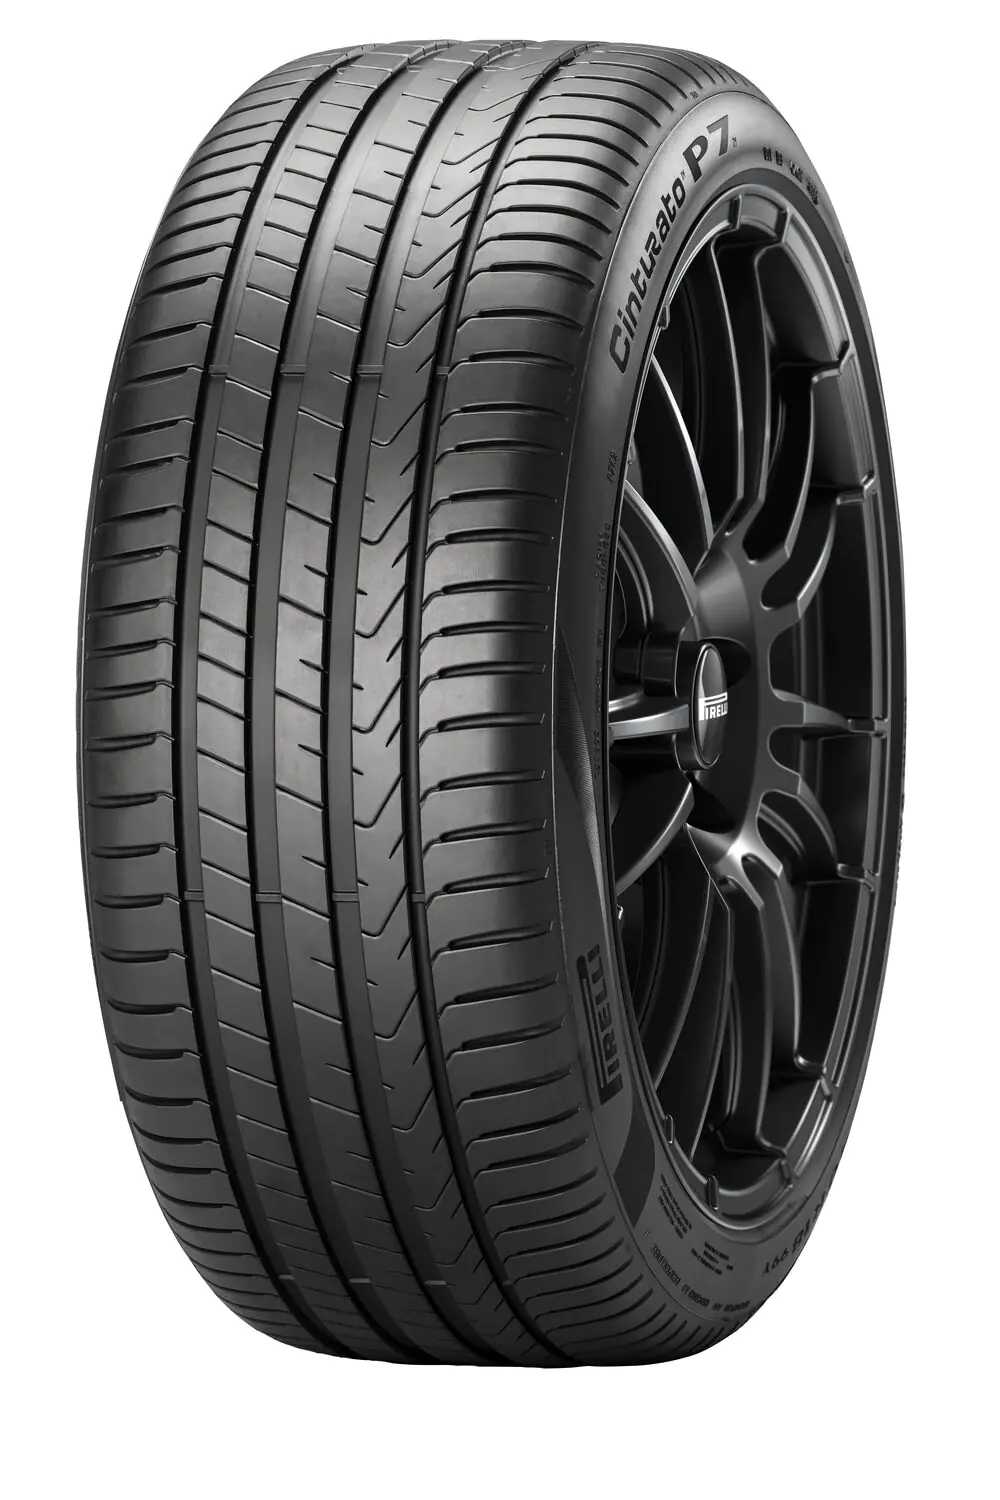 Pirelli Pirelli 245/45 R18 96W CINTURATO P7-CNT pneumatici nuovi Estivo 